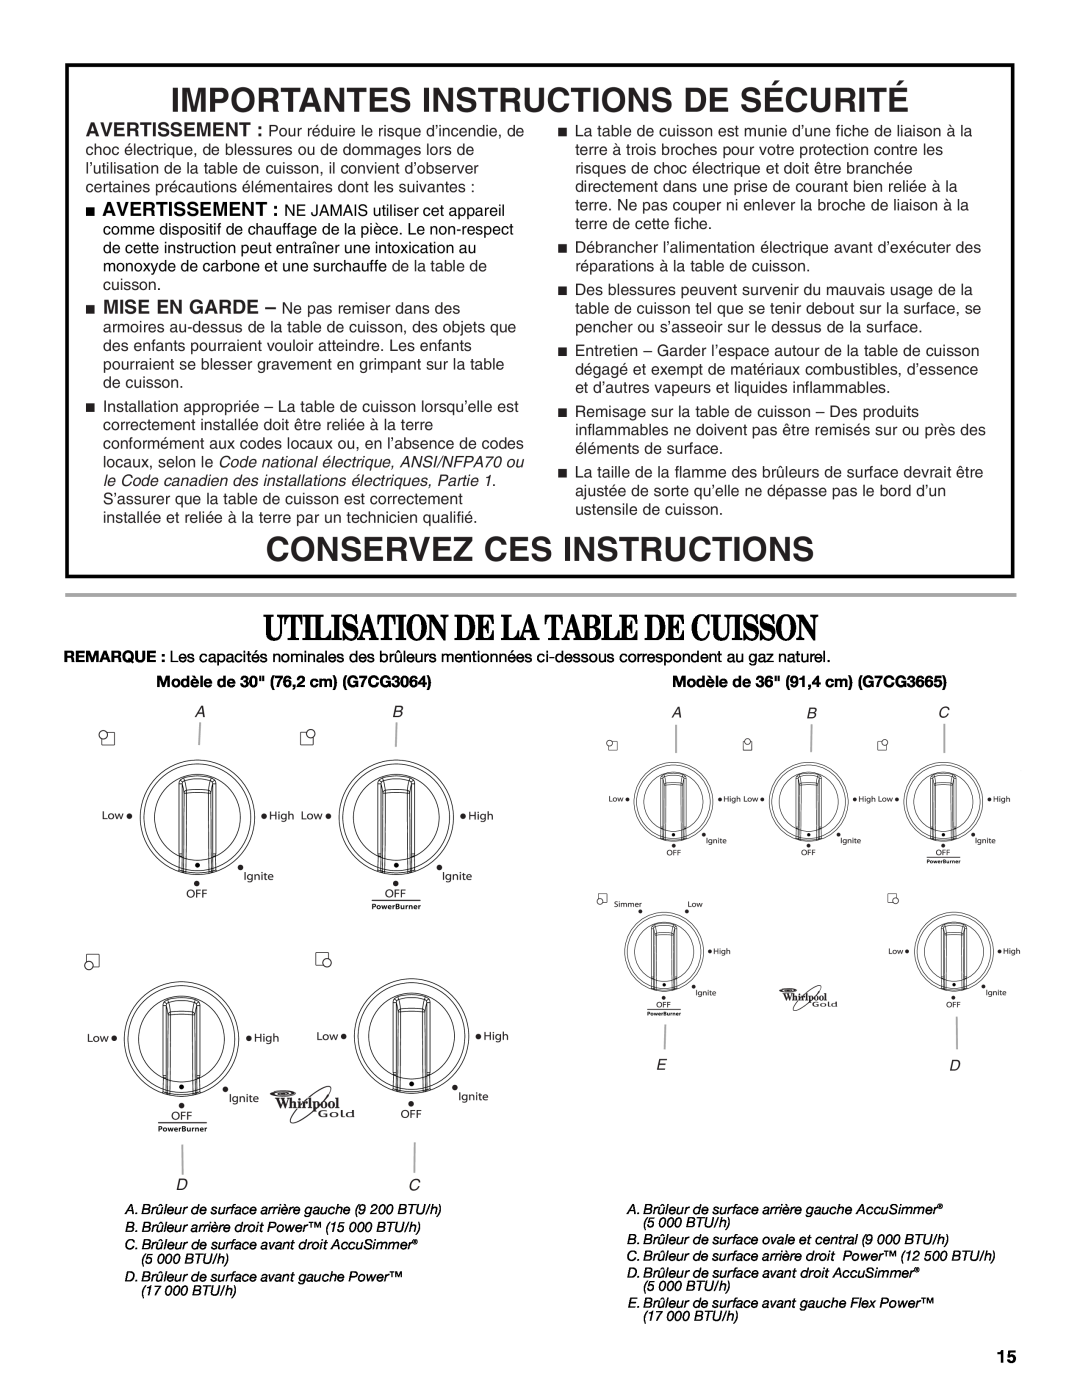 Whirlpool G7CG3665XS Utilisation De La Table De Cuisson, Importantes Instructions De Sécurité, Conservez Ces Instructions 